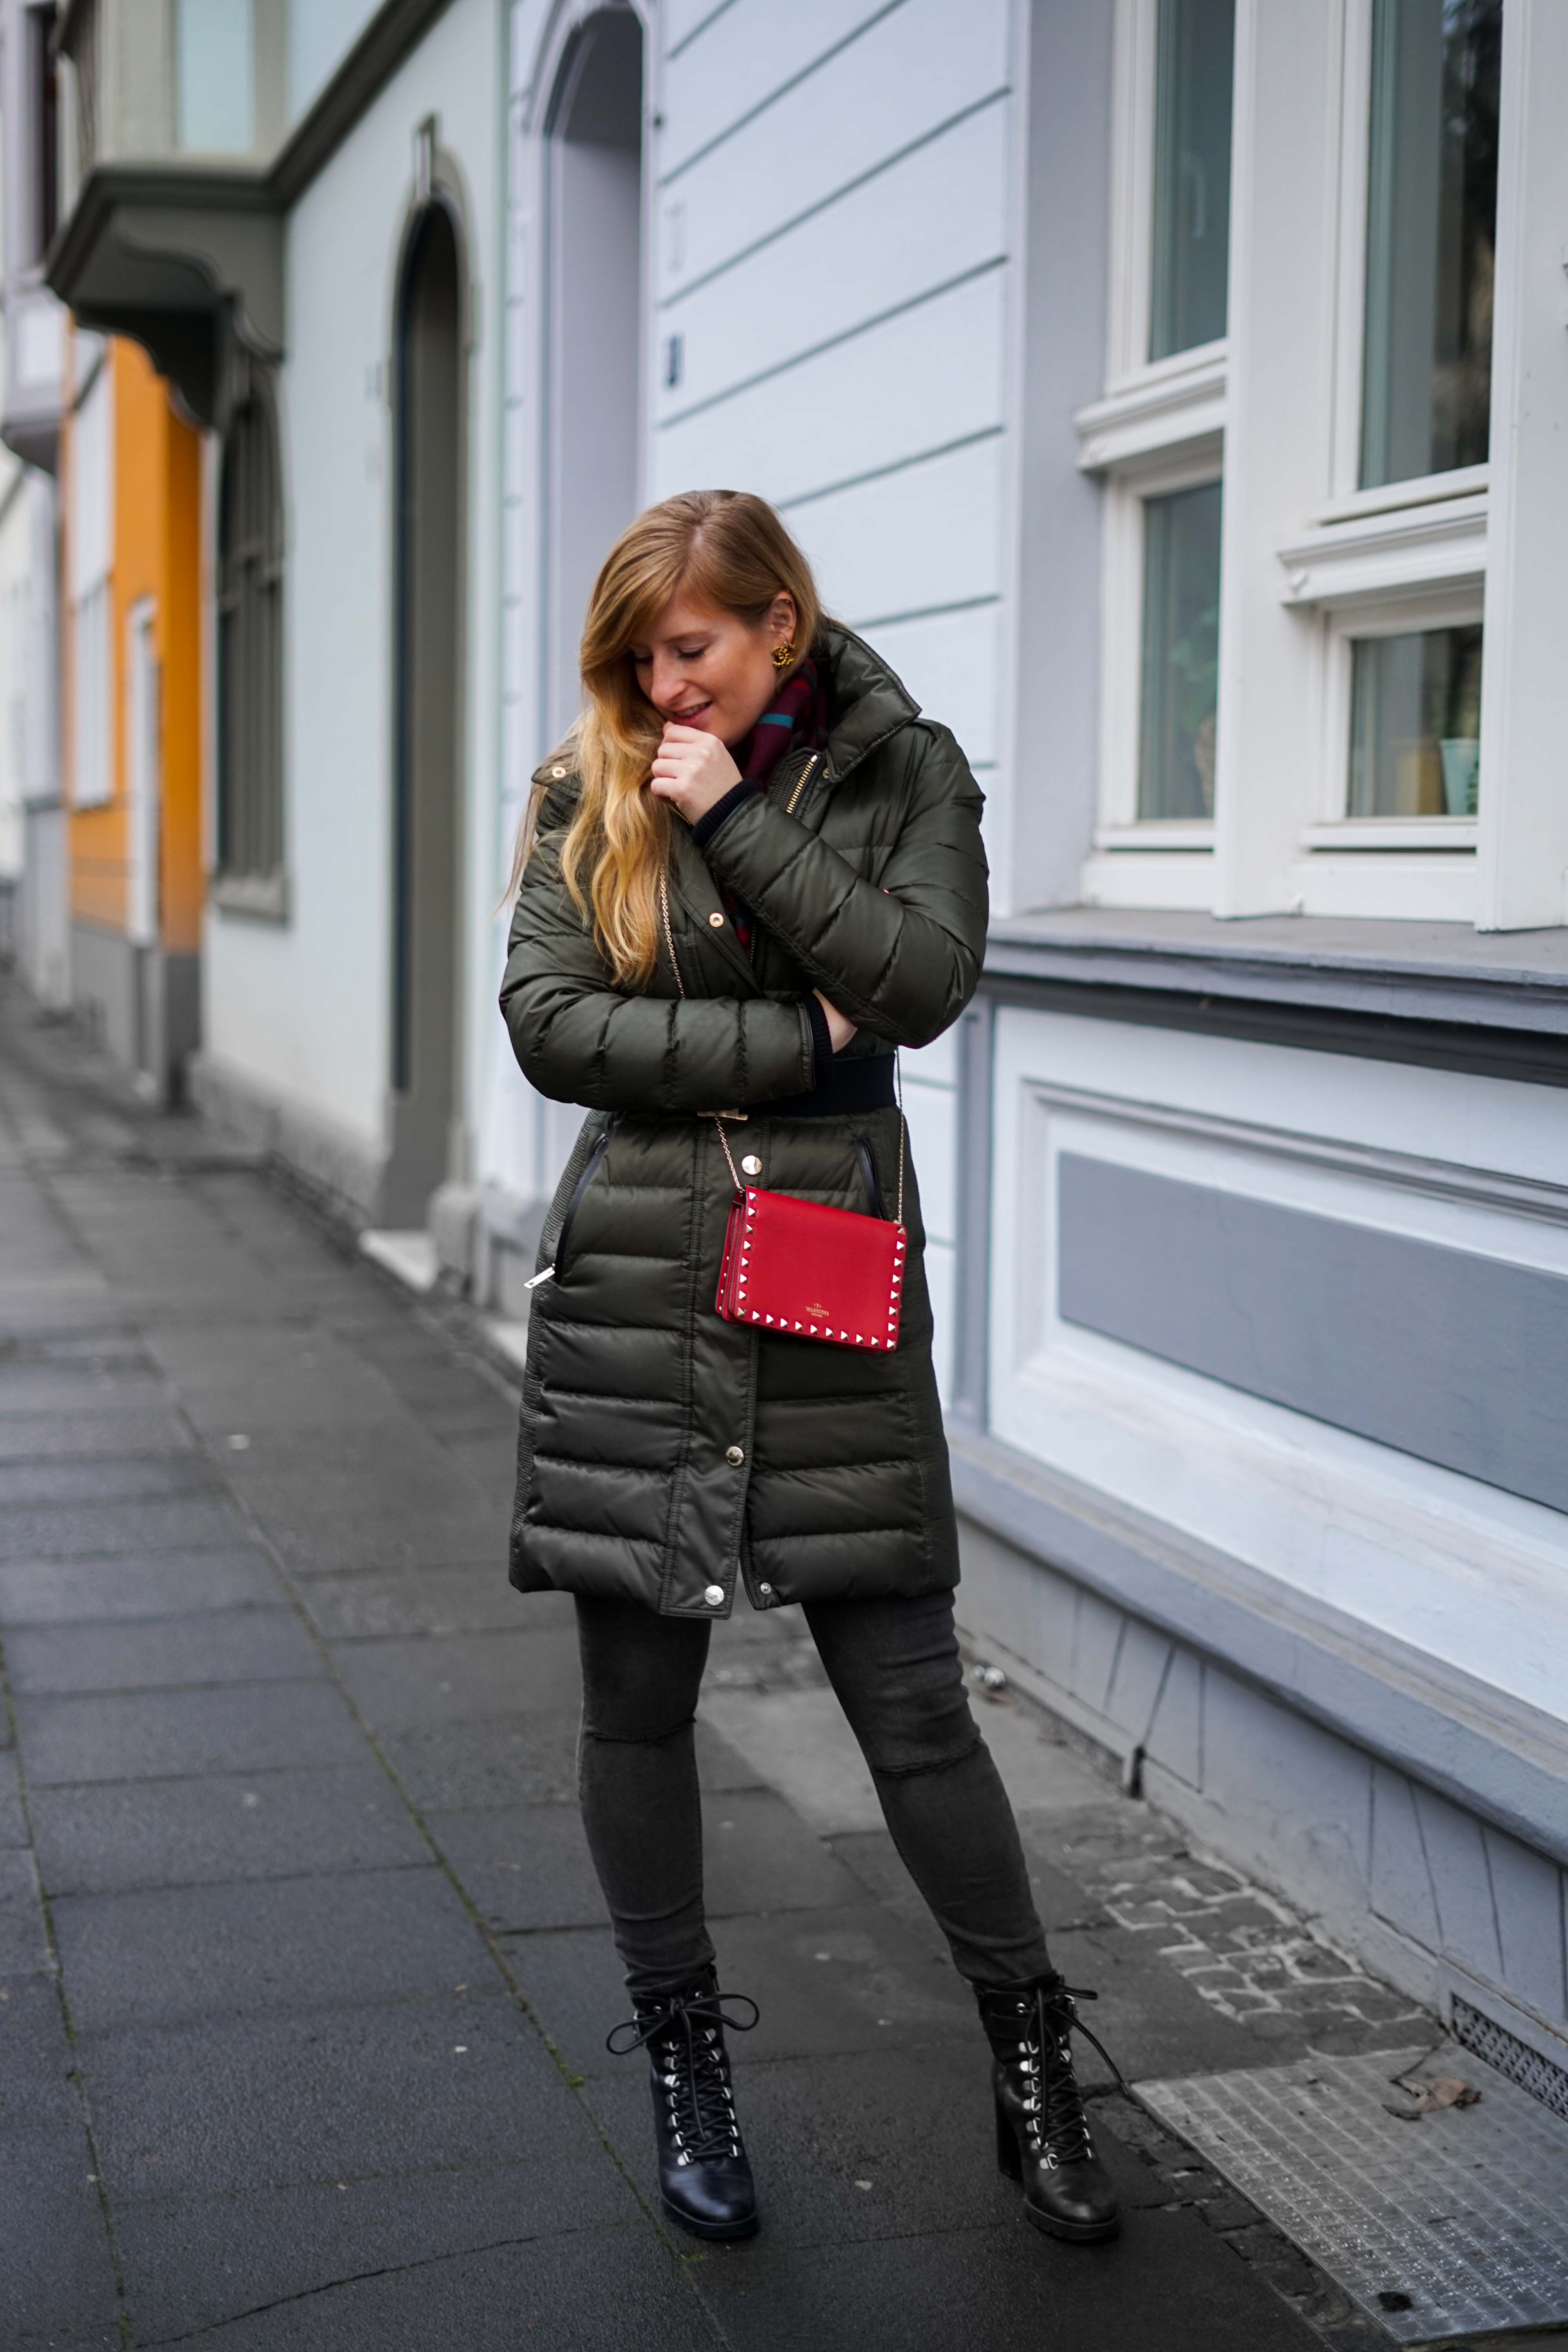 Burberry Winterjacke Grün Modeblog Winter Outfit Bonn Stiefeletten kombinieren 9